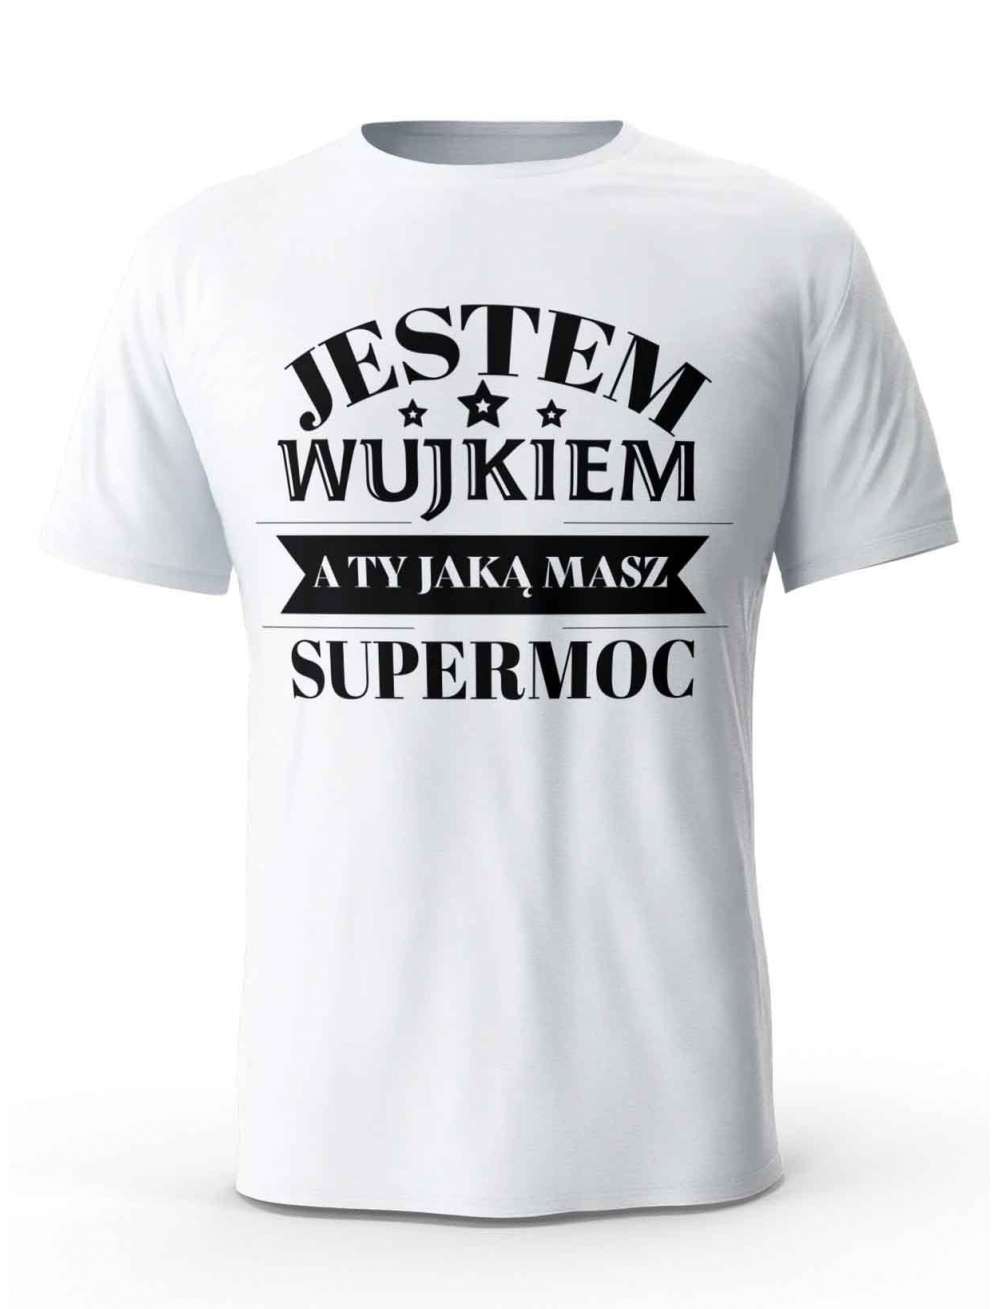 Koszulka Jestem Wujkiem a Ty Jaką masz Supermoc, T-shirt dla Wujka